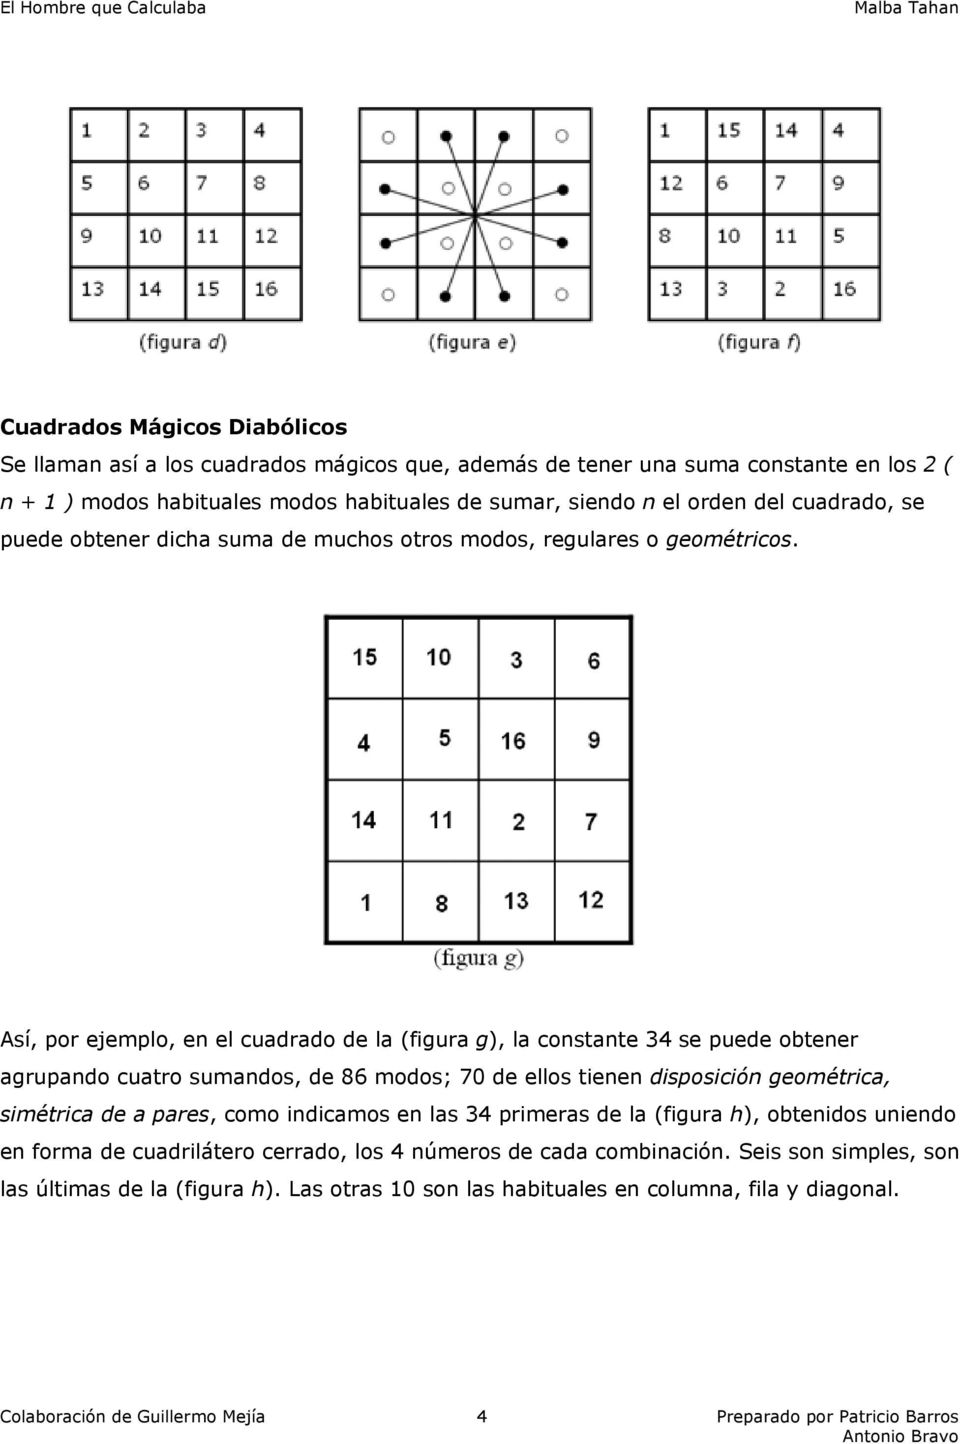 Así, por ejemplo, en el cuadrado de la (figura g), la constante 34 se puede obtener agrupando cuatro sumandos, de 86 modos; 70 de ellos tienen disposición geométrica, simétrica de